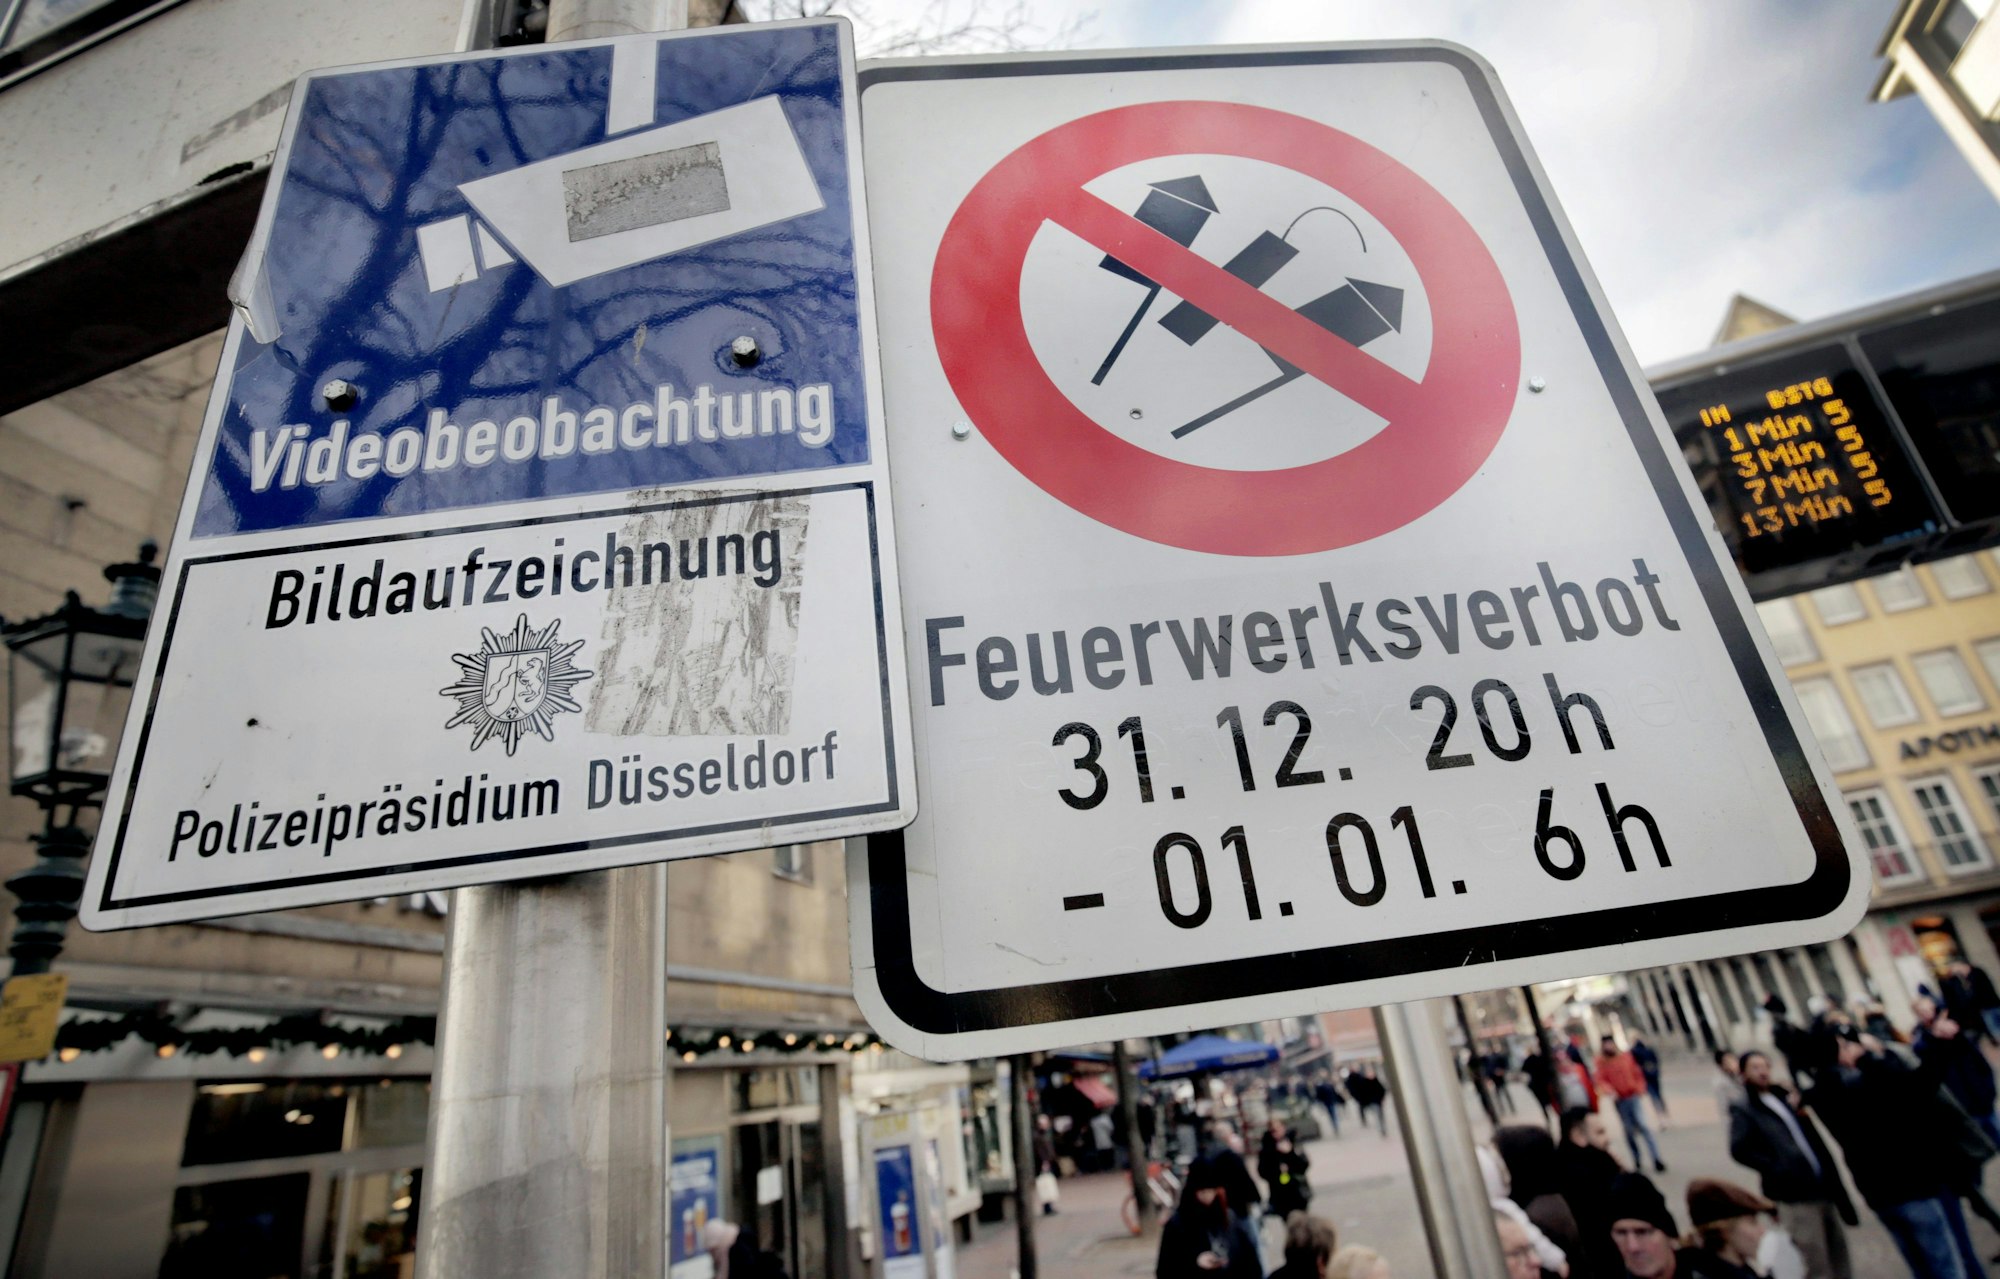 Ein Schild in einer Düsseldorfer Fußgängerzone zeigt durchgestrichene Raketen und Silvesterböller, darunter die Aufschrift "Feuerwerksverbot".